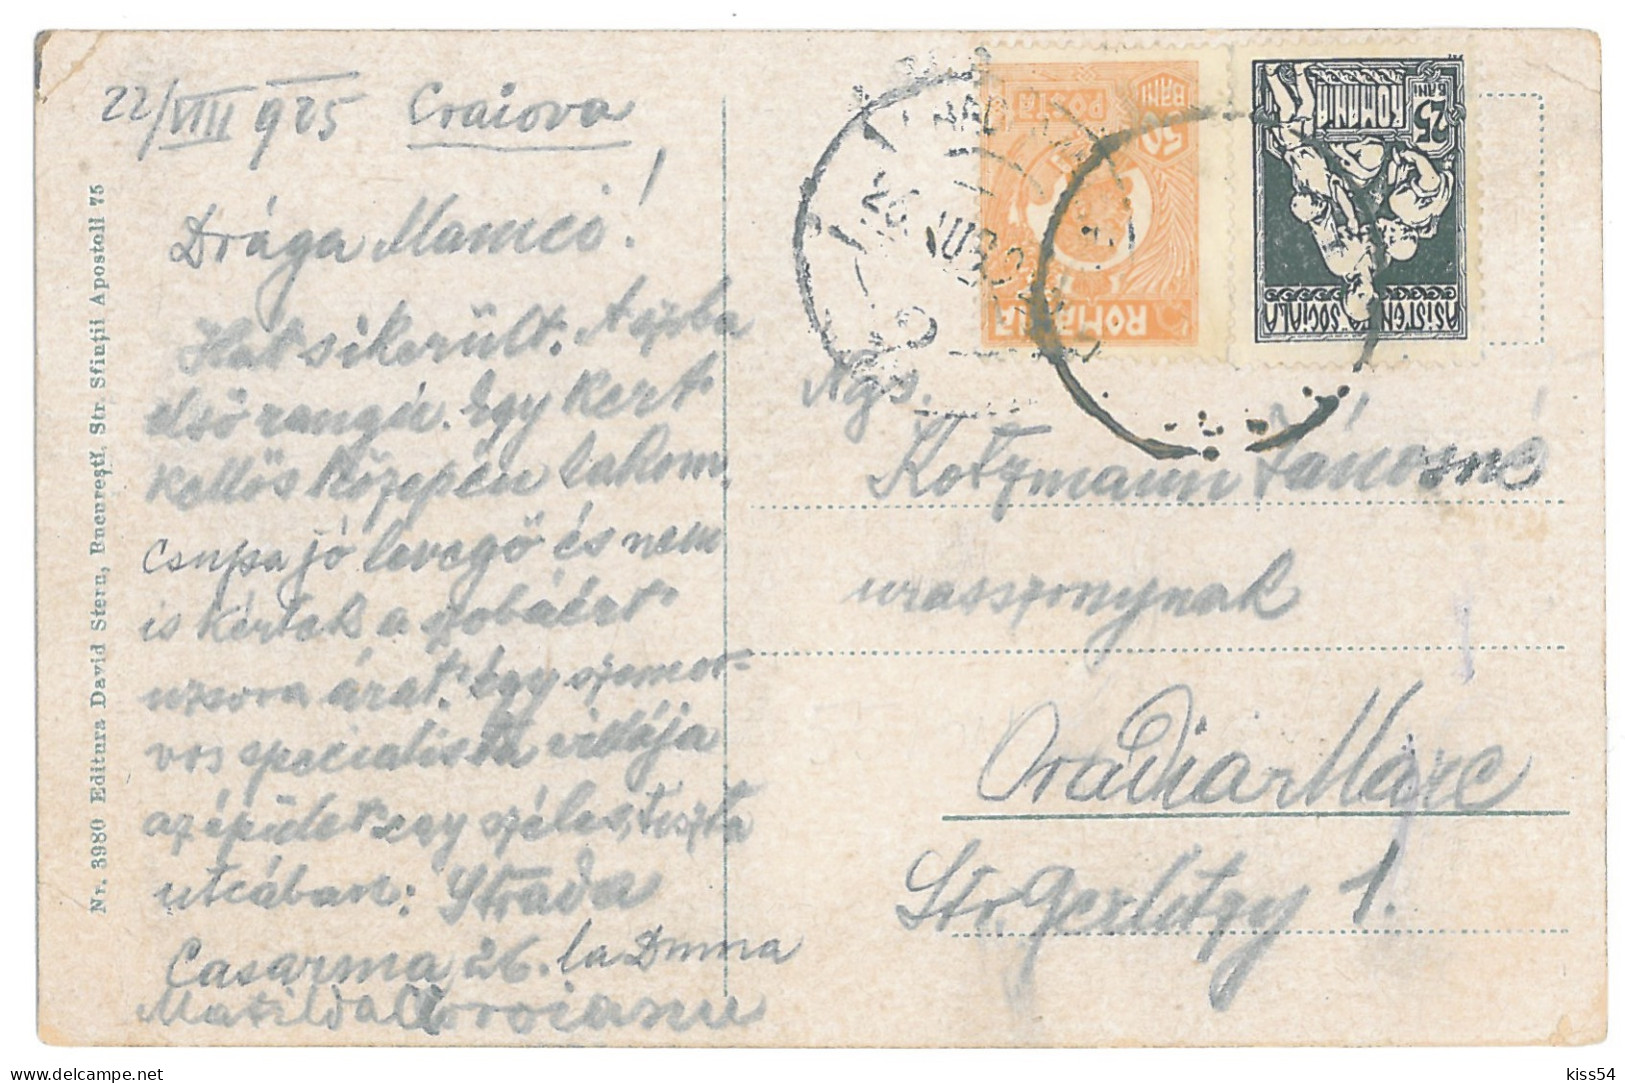 RO 45 - 14733 CRAIOVA, Market, Romania - Old Postcard - Used - 1925 - Roemenië